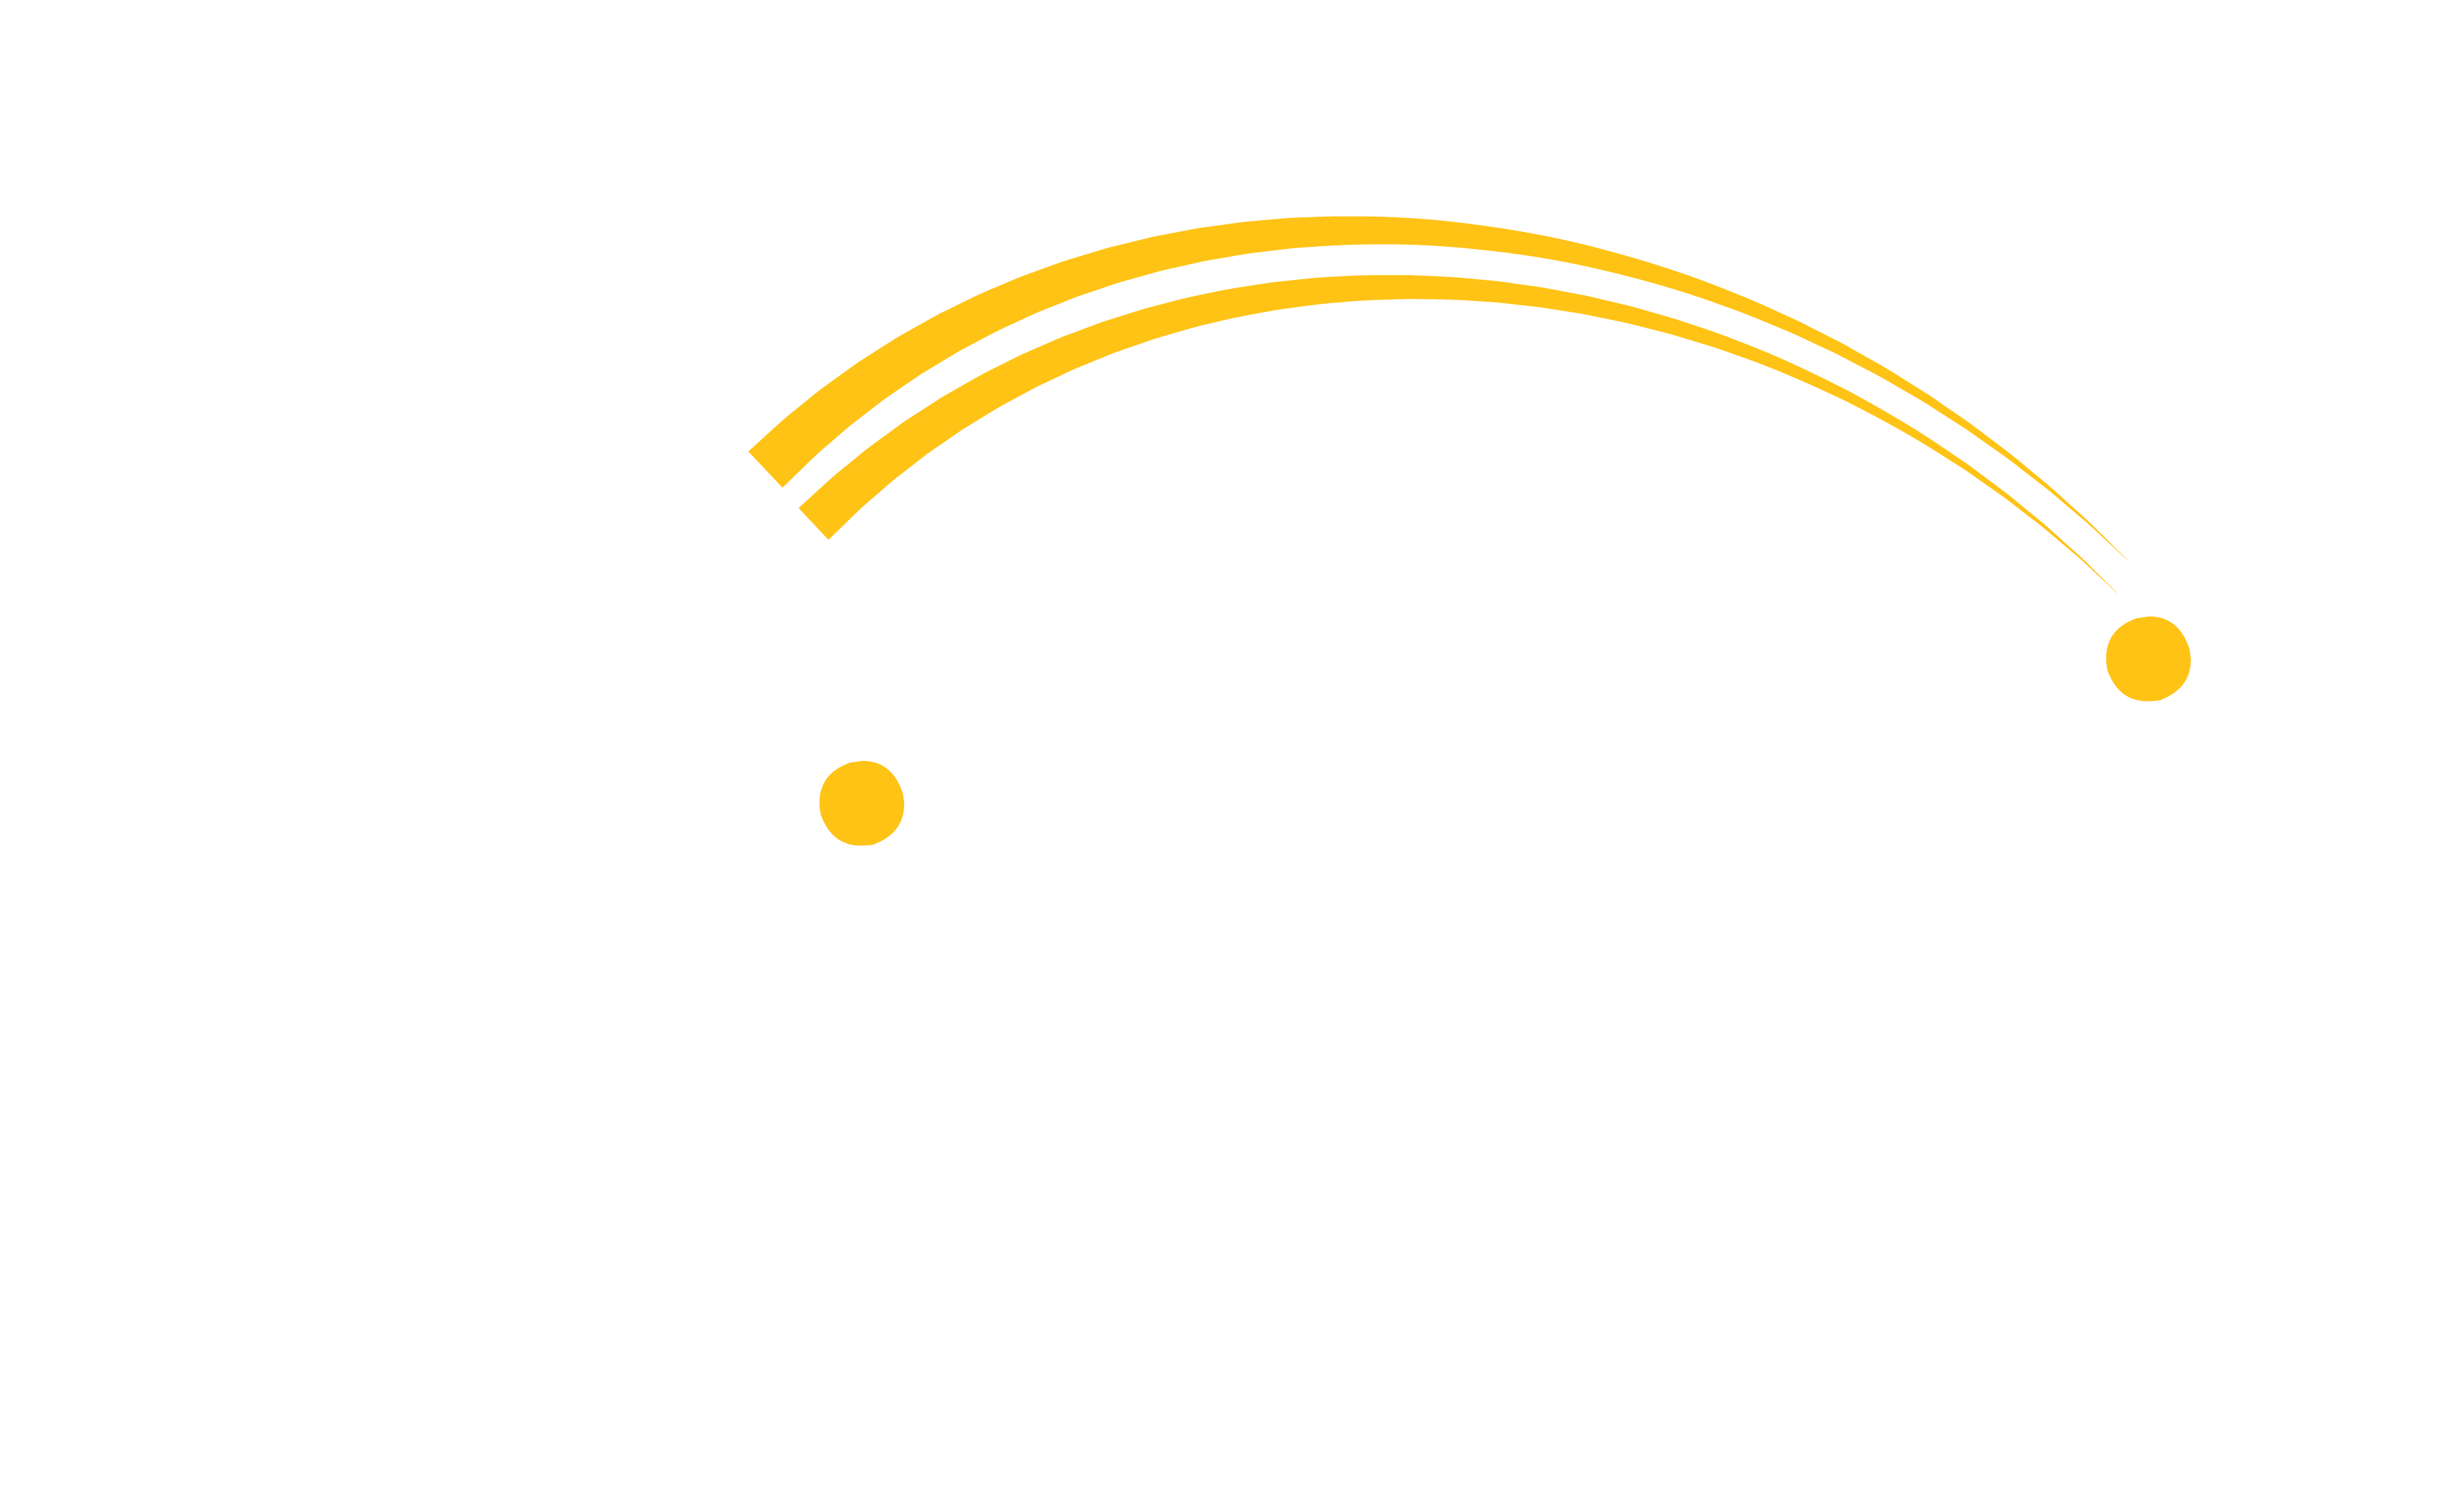 Vipany Global